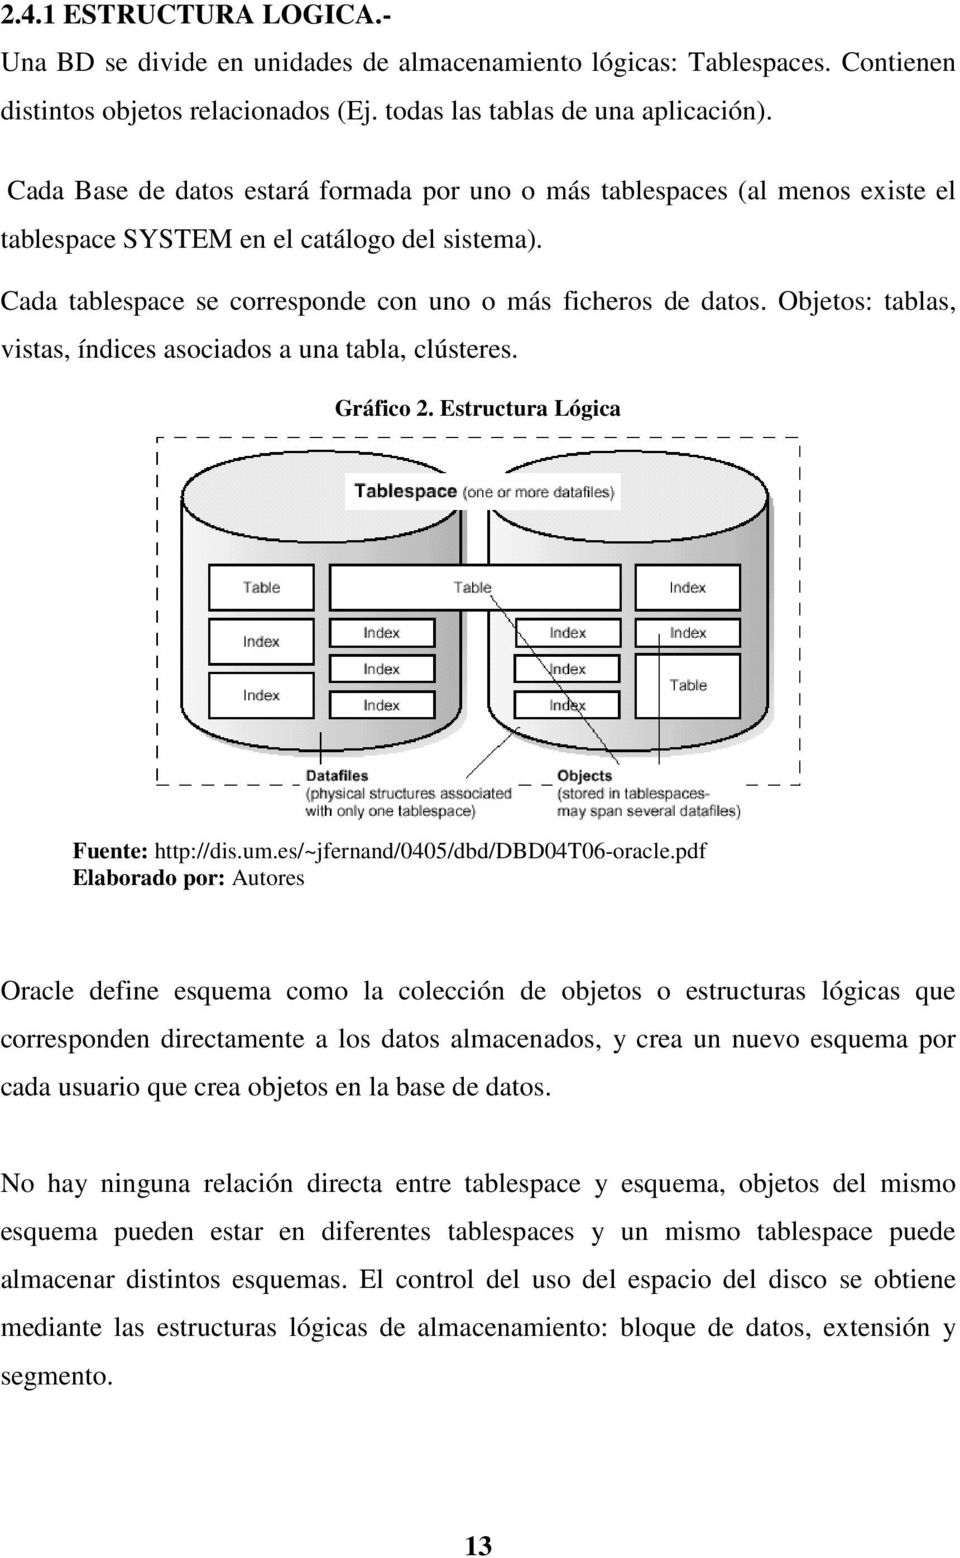 Objetos: tablas, vistas, índices asociados a una tabla, clústeres. Gráfico 2. Estructura Lógica Fuente: http://dis.um.es/~jfernand/0405/dbd/dbd04t06-oracle.